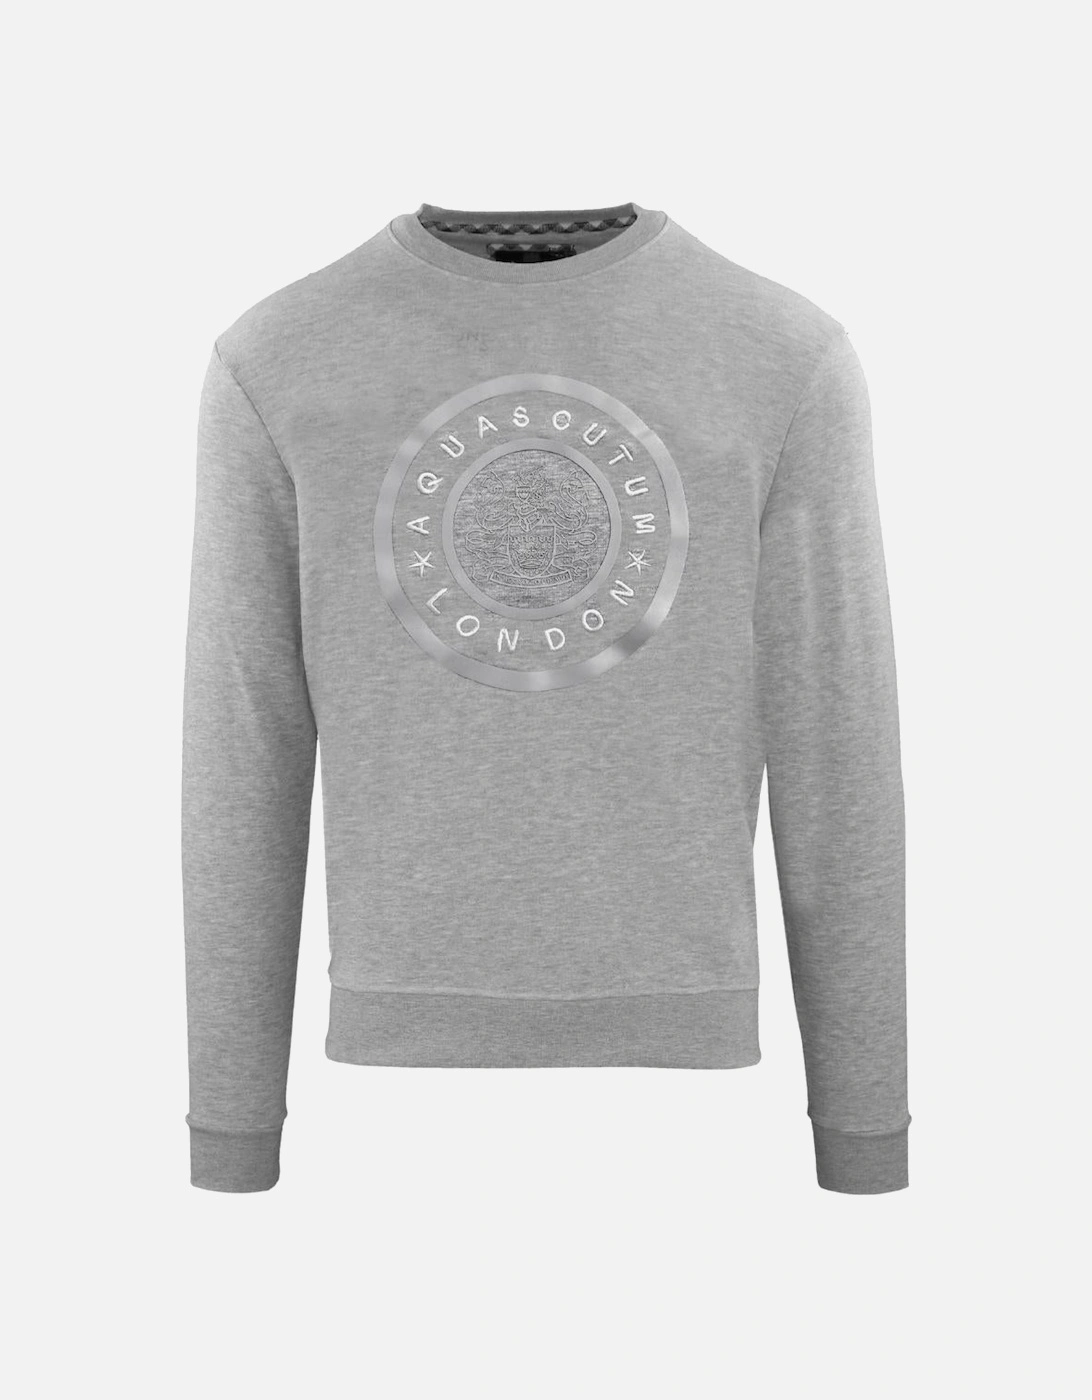 Monotone Large Circle Logo Grey Sweatshirt, 2 of 1